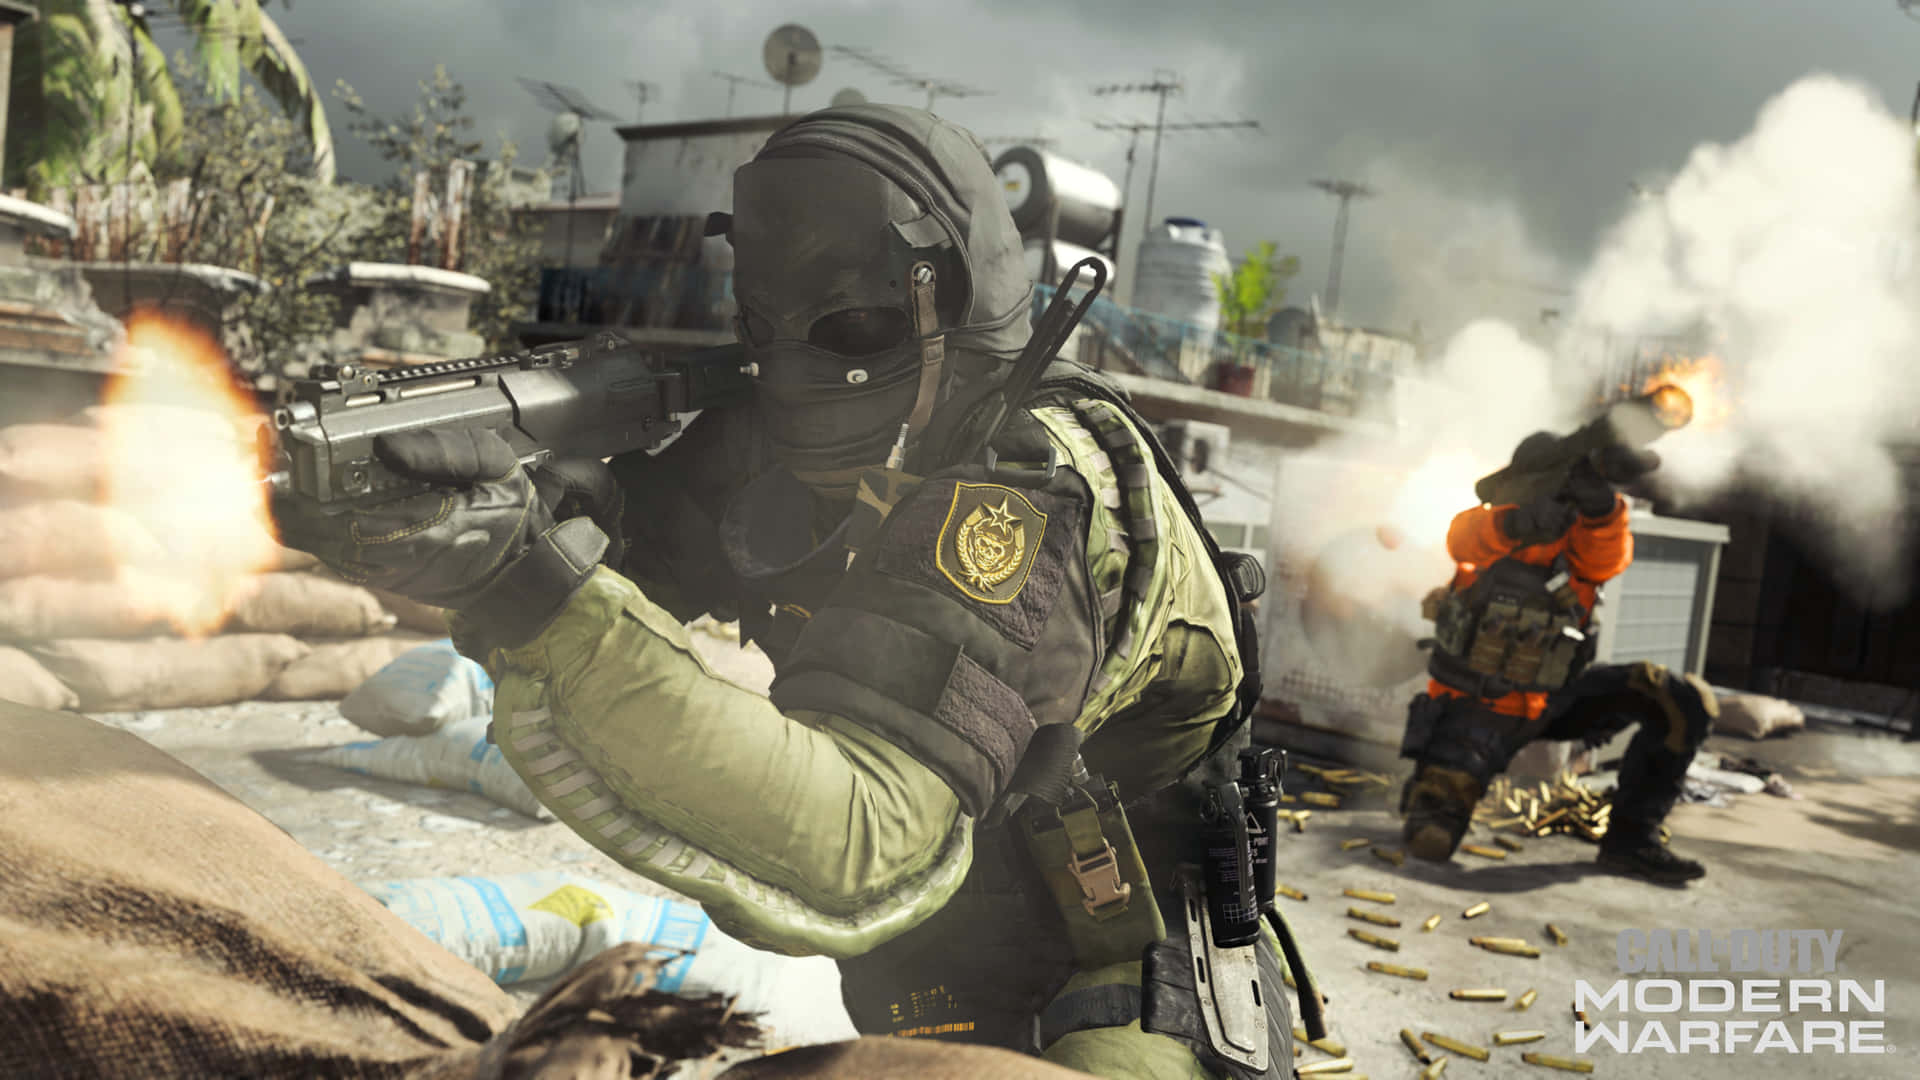 4kbakgrundsbild Av Call Of Duty: Modern Warfare Där Det Skjuts Från En Barrikad.